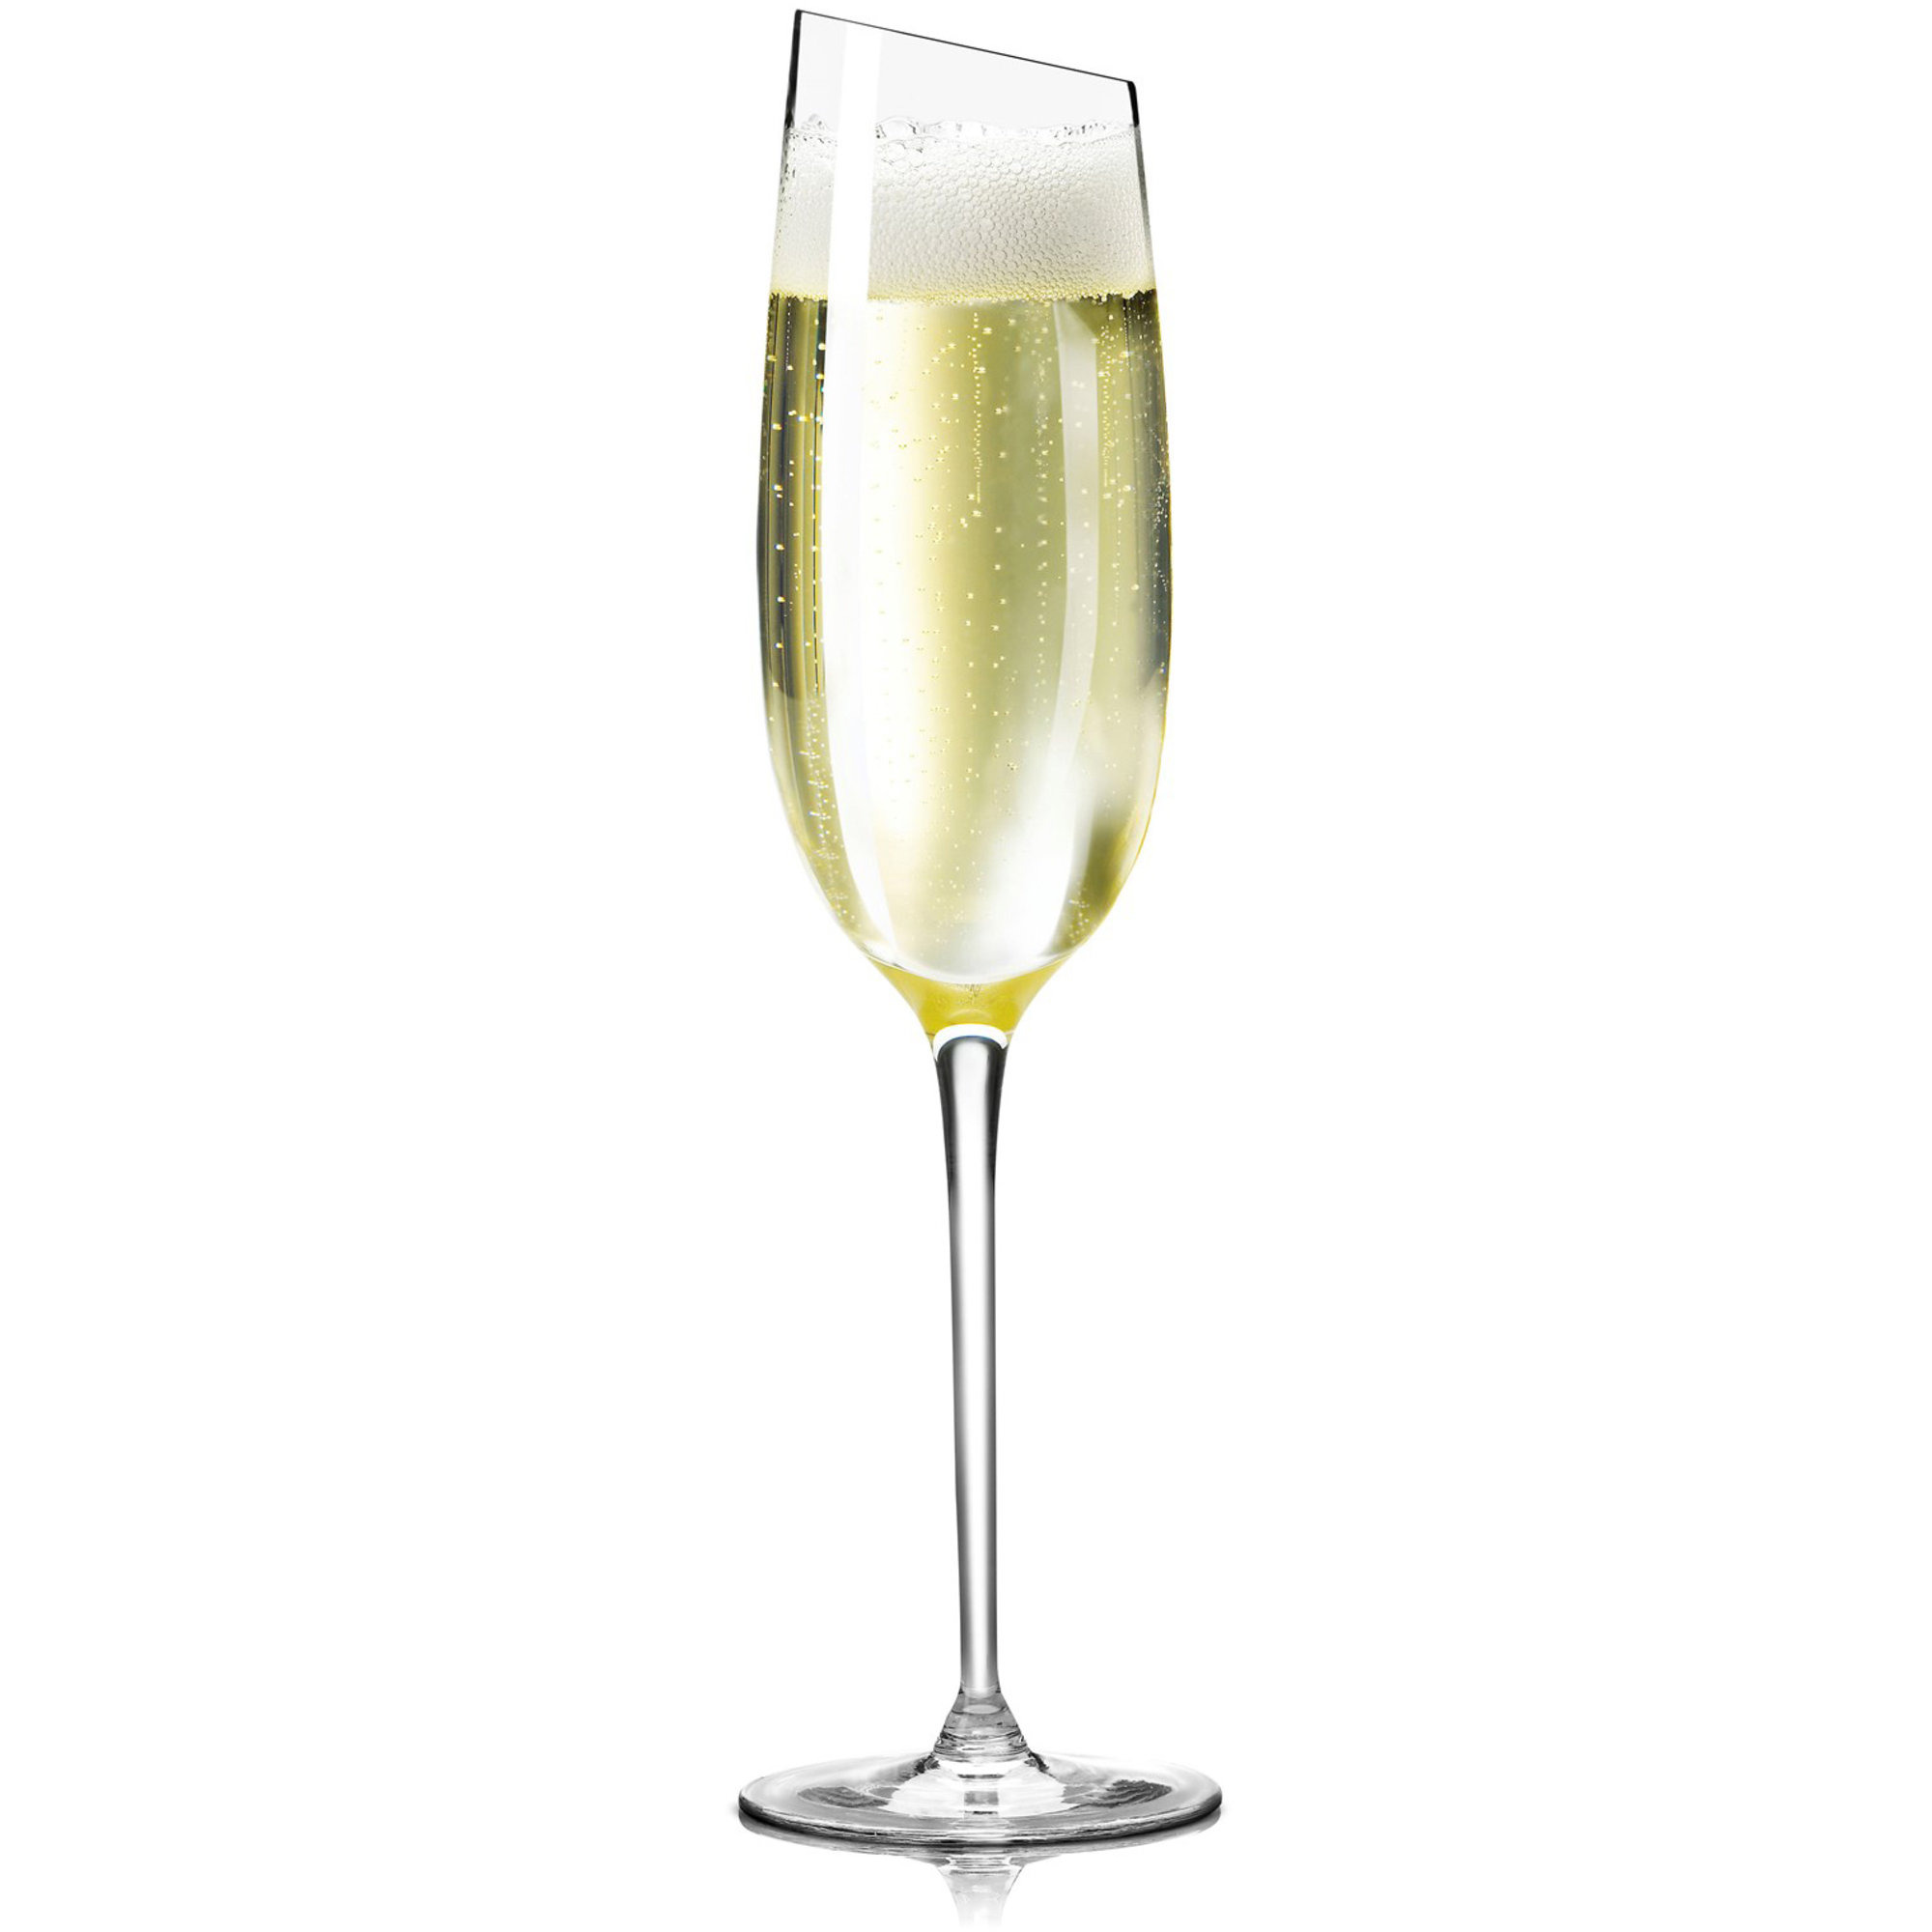 #1 på vores liste over champagner er Champagne